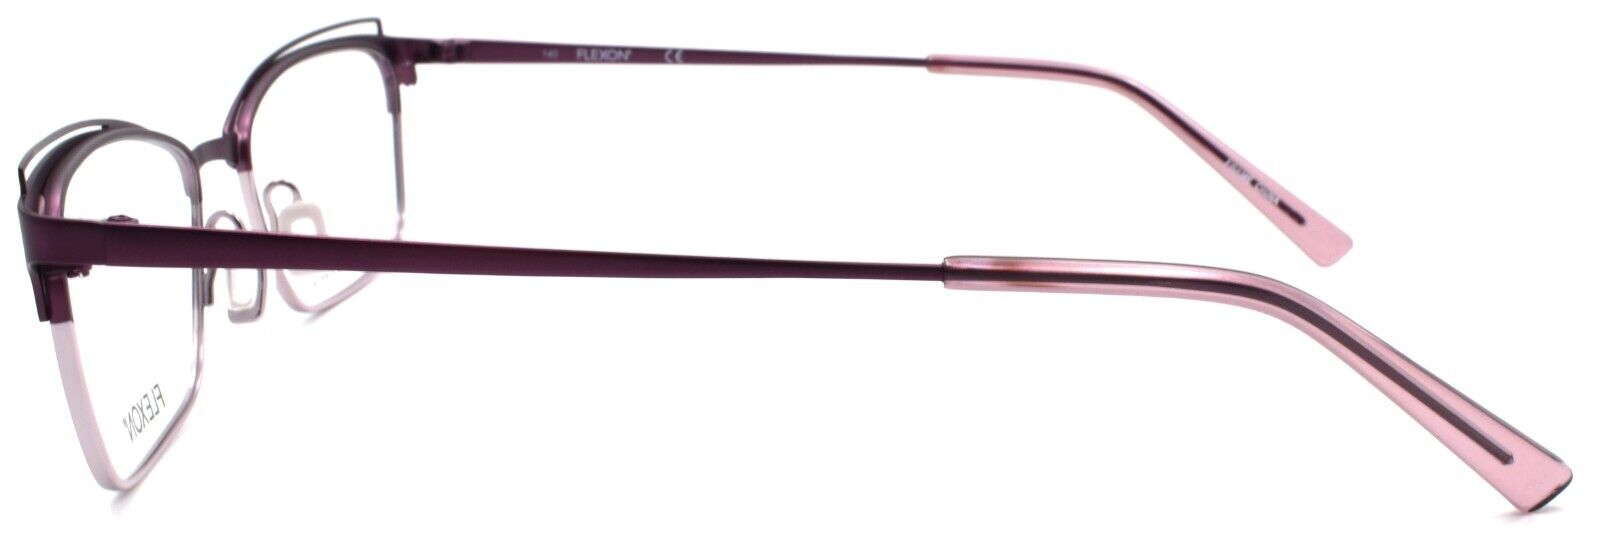 3-Flexon W3102 505 Women's Eyeglasses Frames Plum 53-18-140 Flexible Titanium-886895484930-IKSpecs